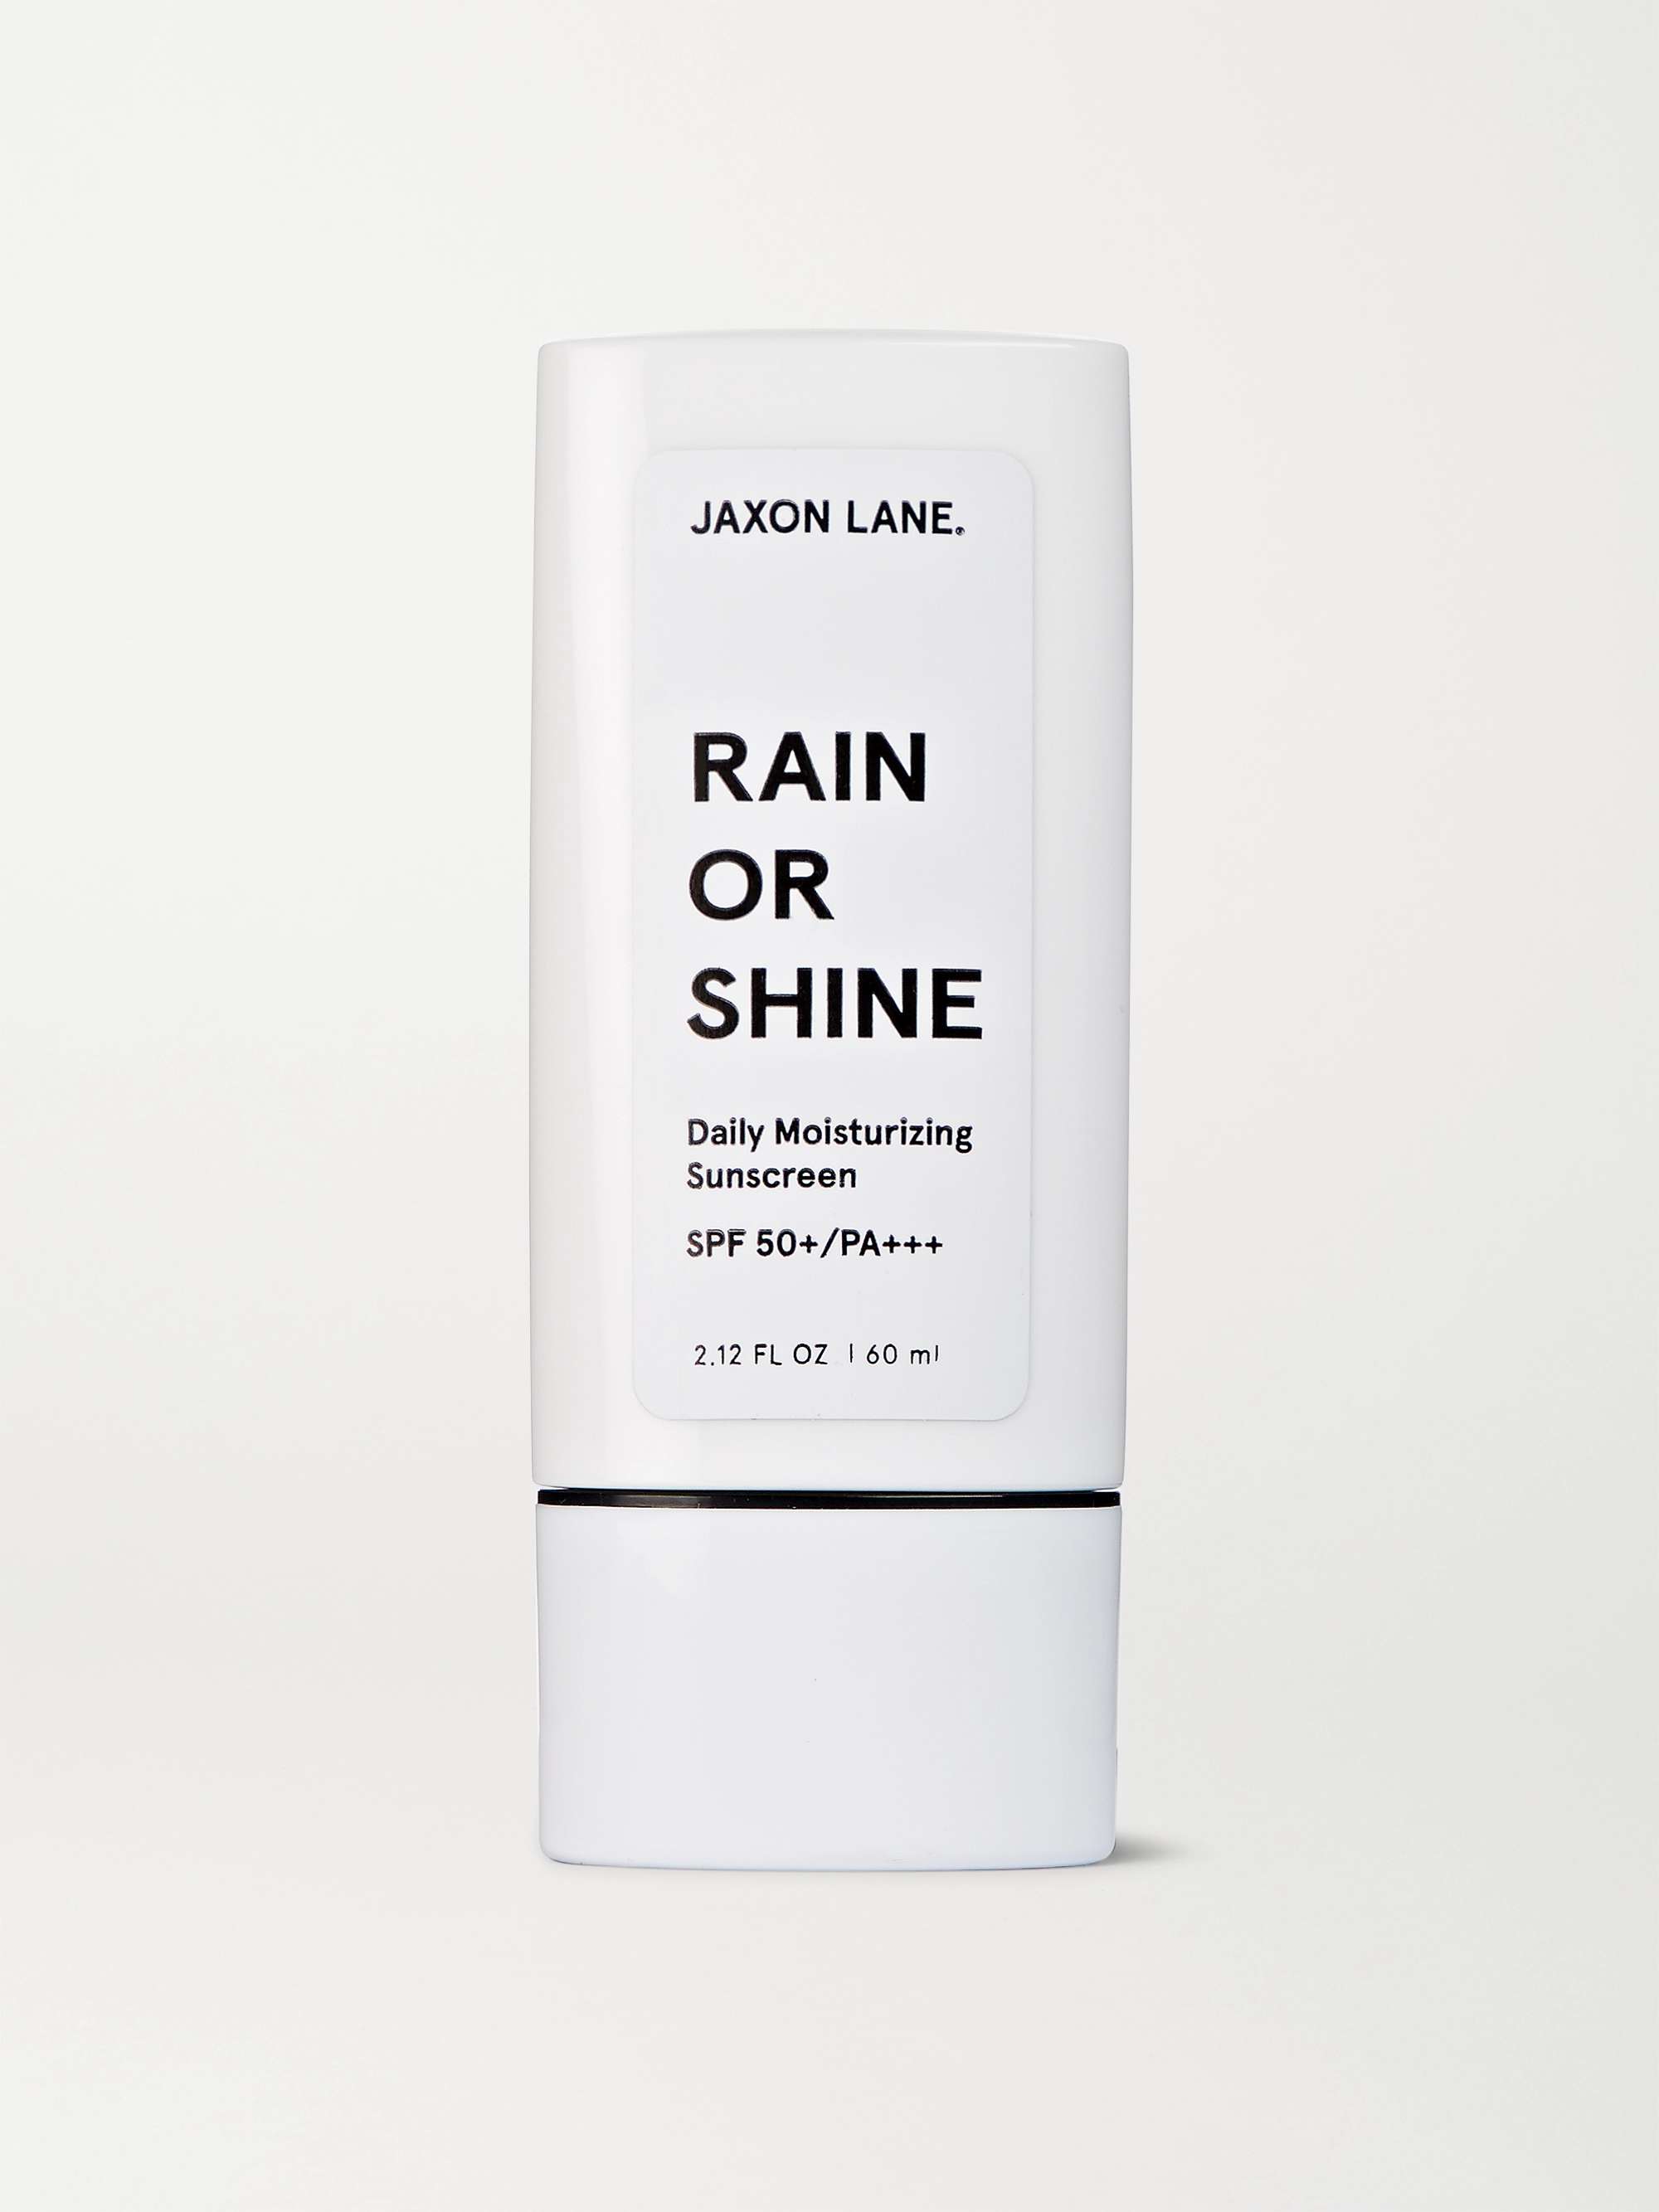 JAXON LANE Rain or Shine Daily Moisturizing Sunscreen SPF 50+, 60ml